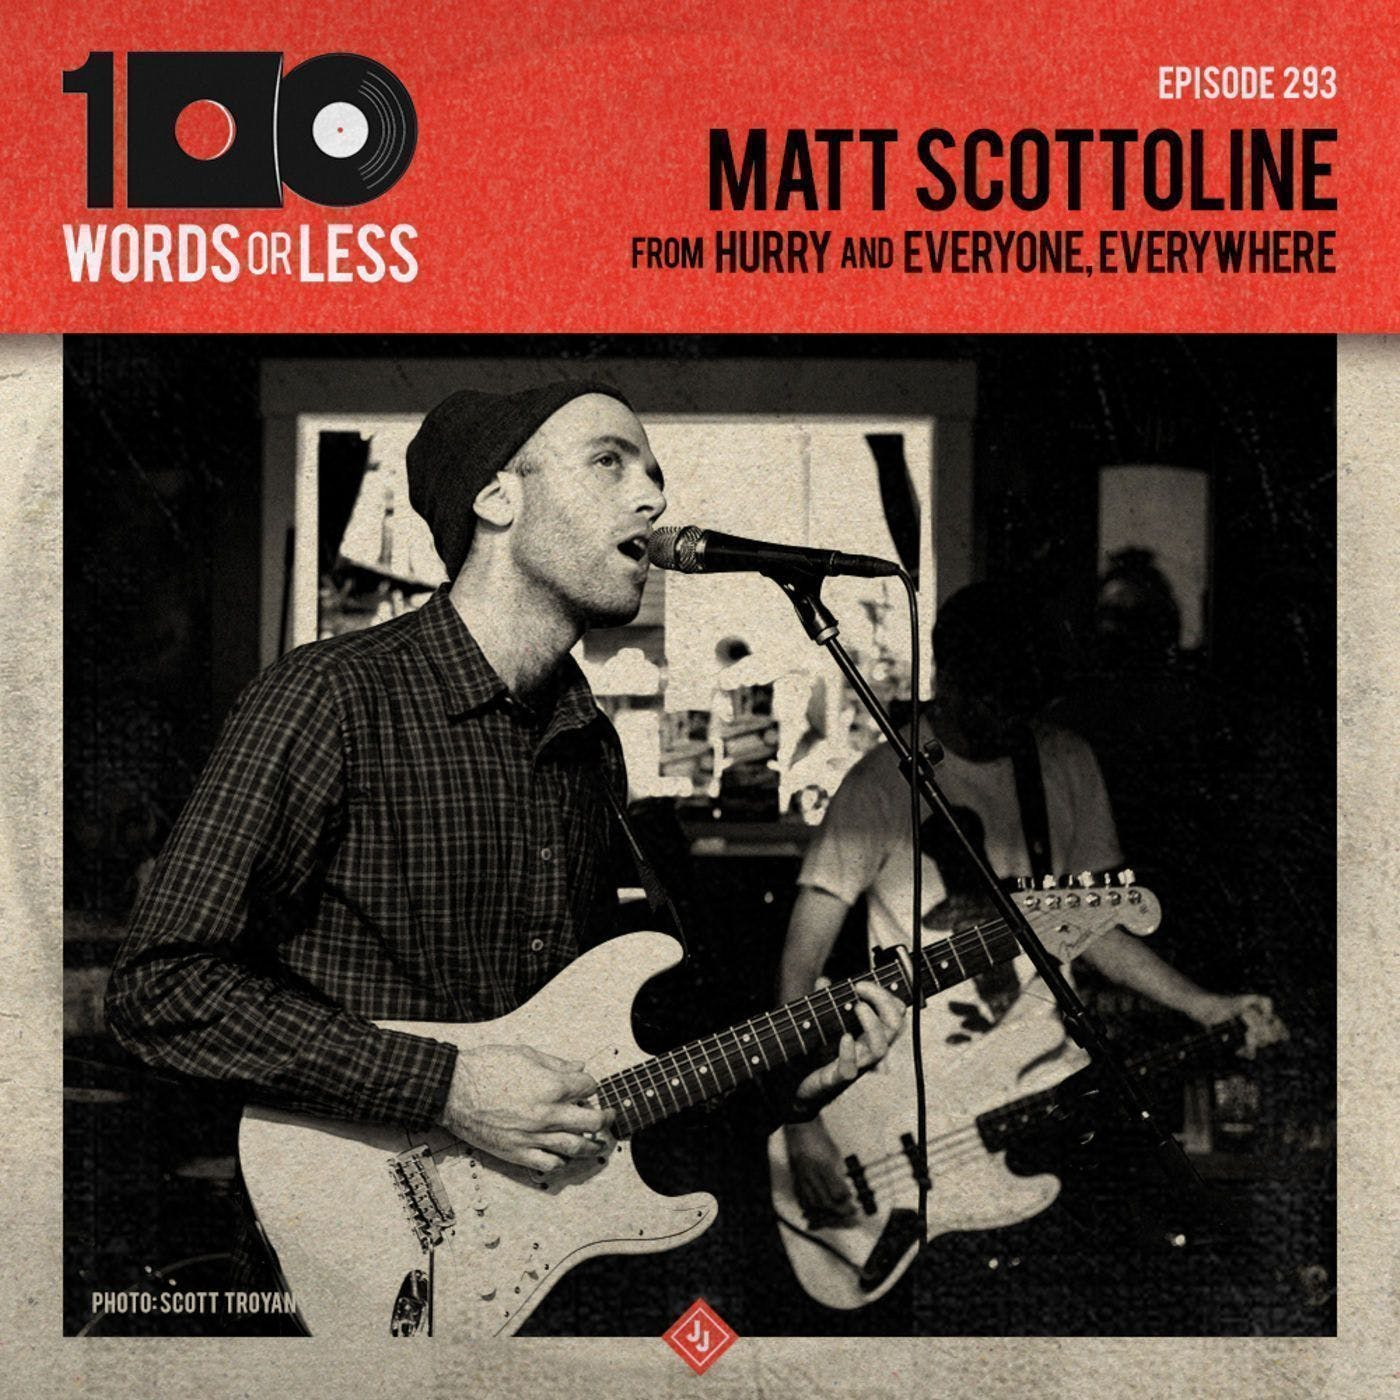 Matt Scottoline from Hurry & Everyone, Everywhere